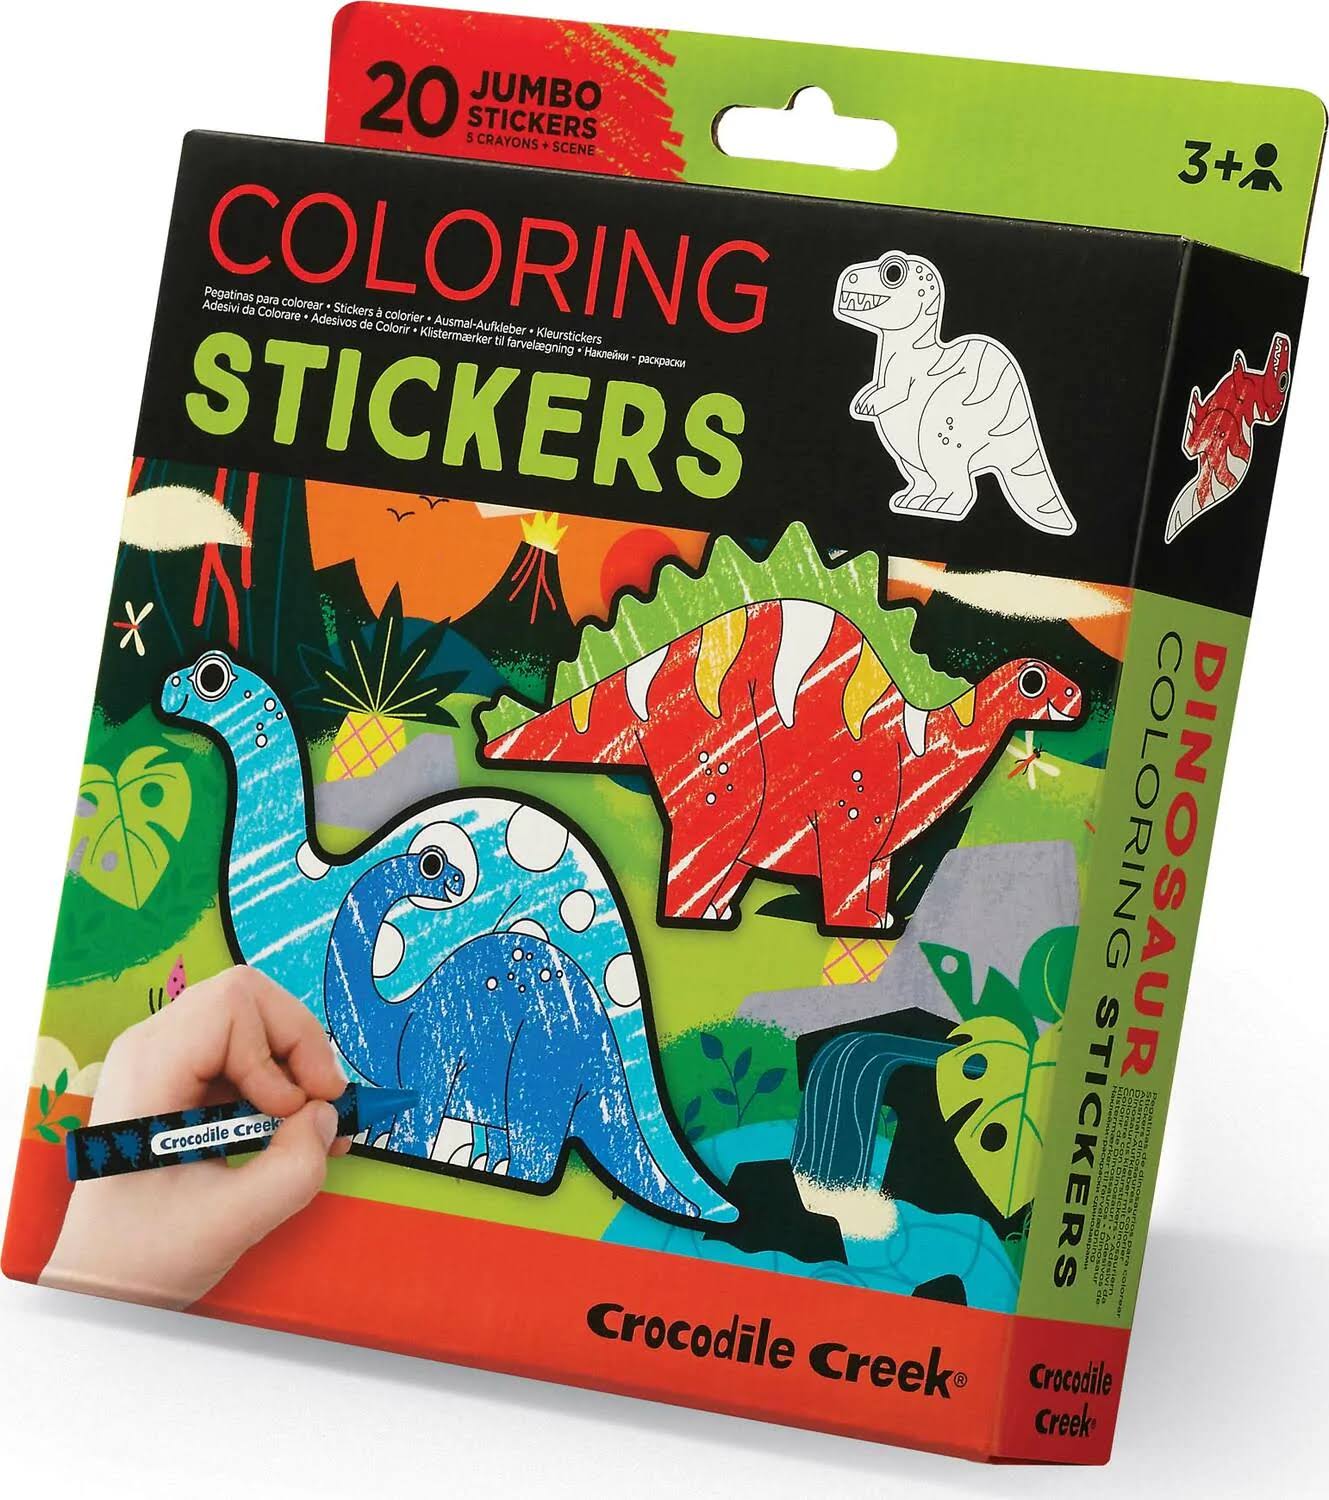 Crocodile Creek Stickers W. Colouring Pencils/Art Scene - 26 D